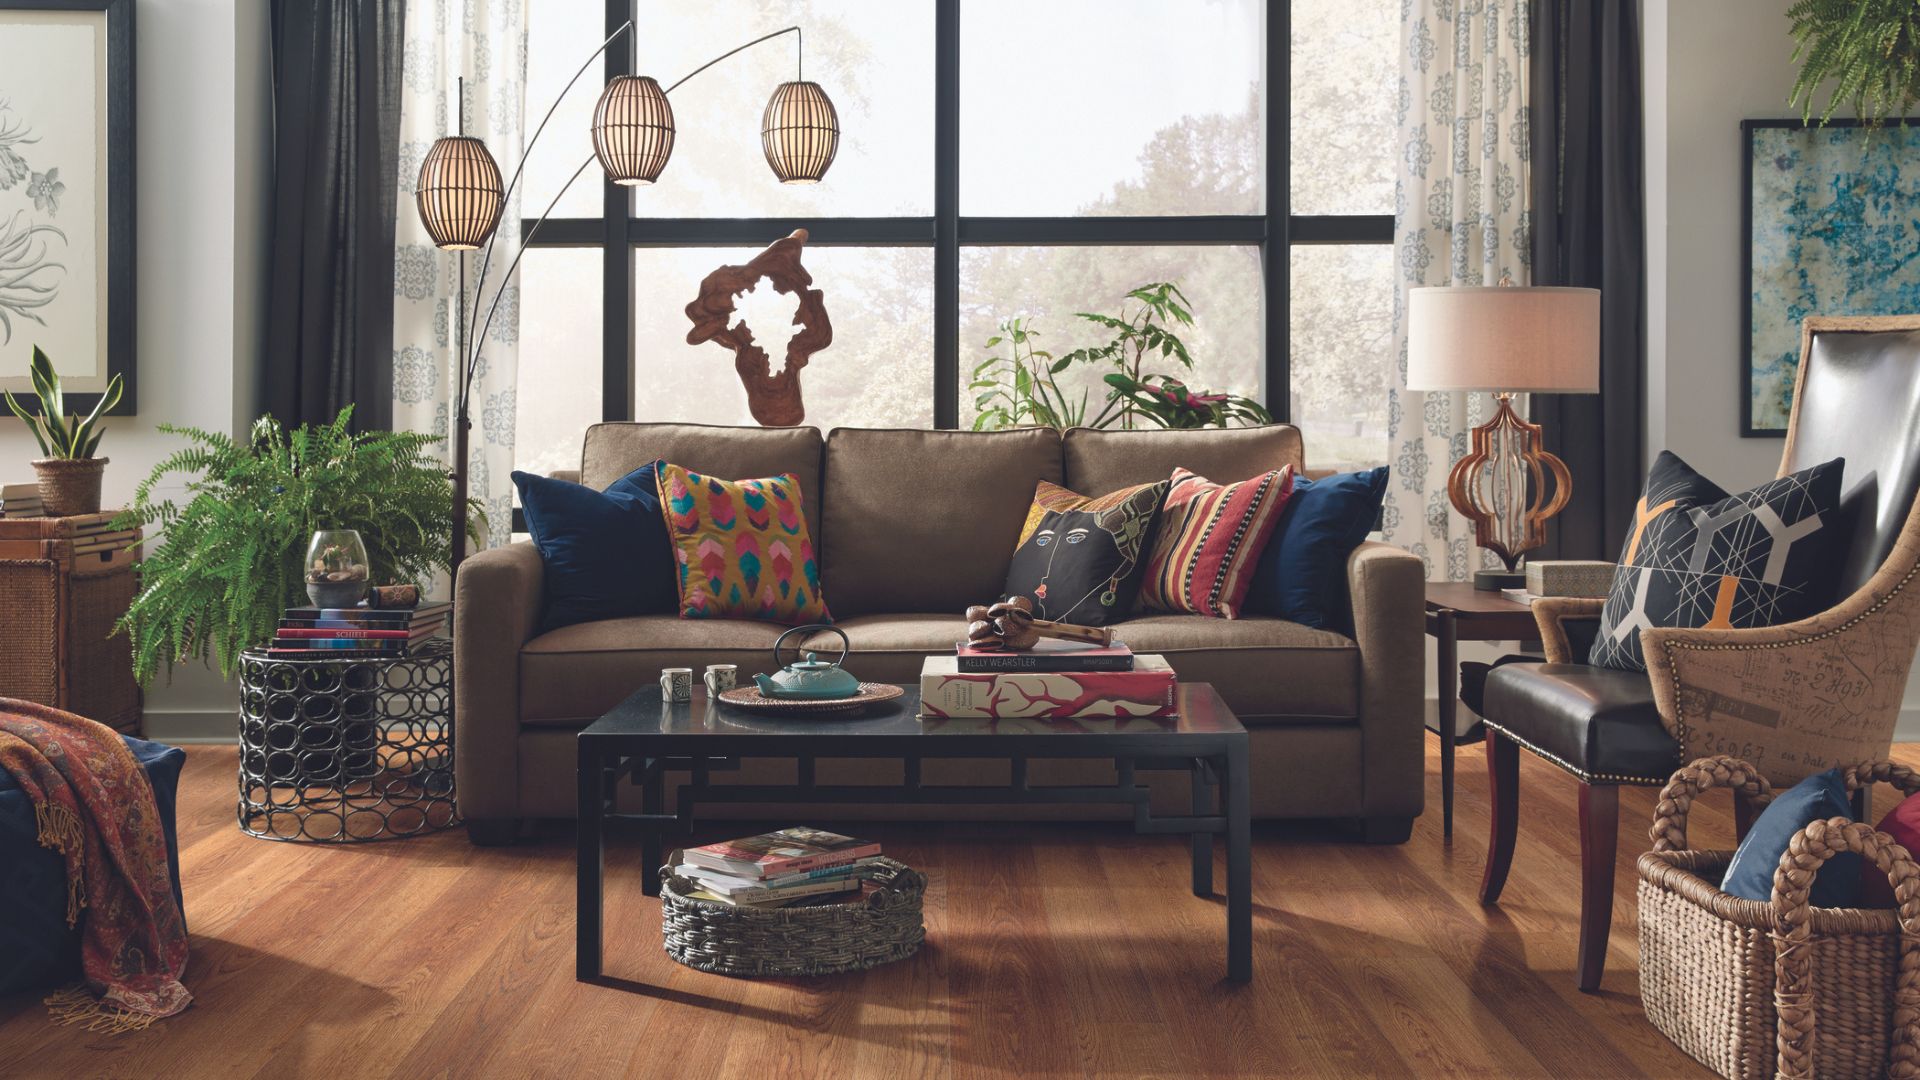 Wood-look luxury vinyl plank flooring in a living room.